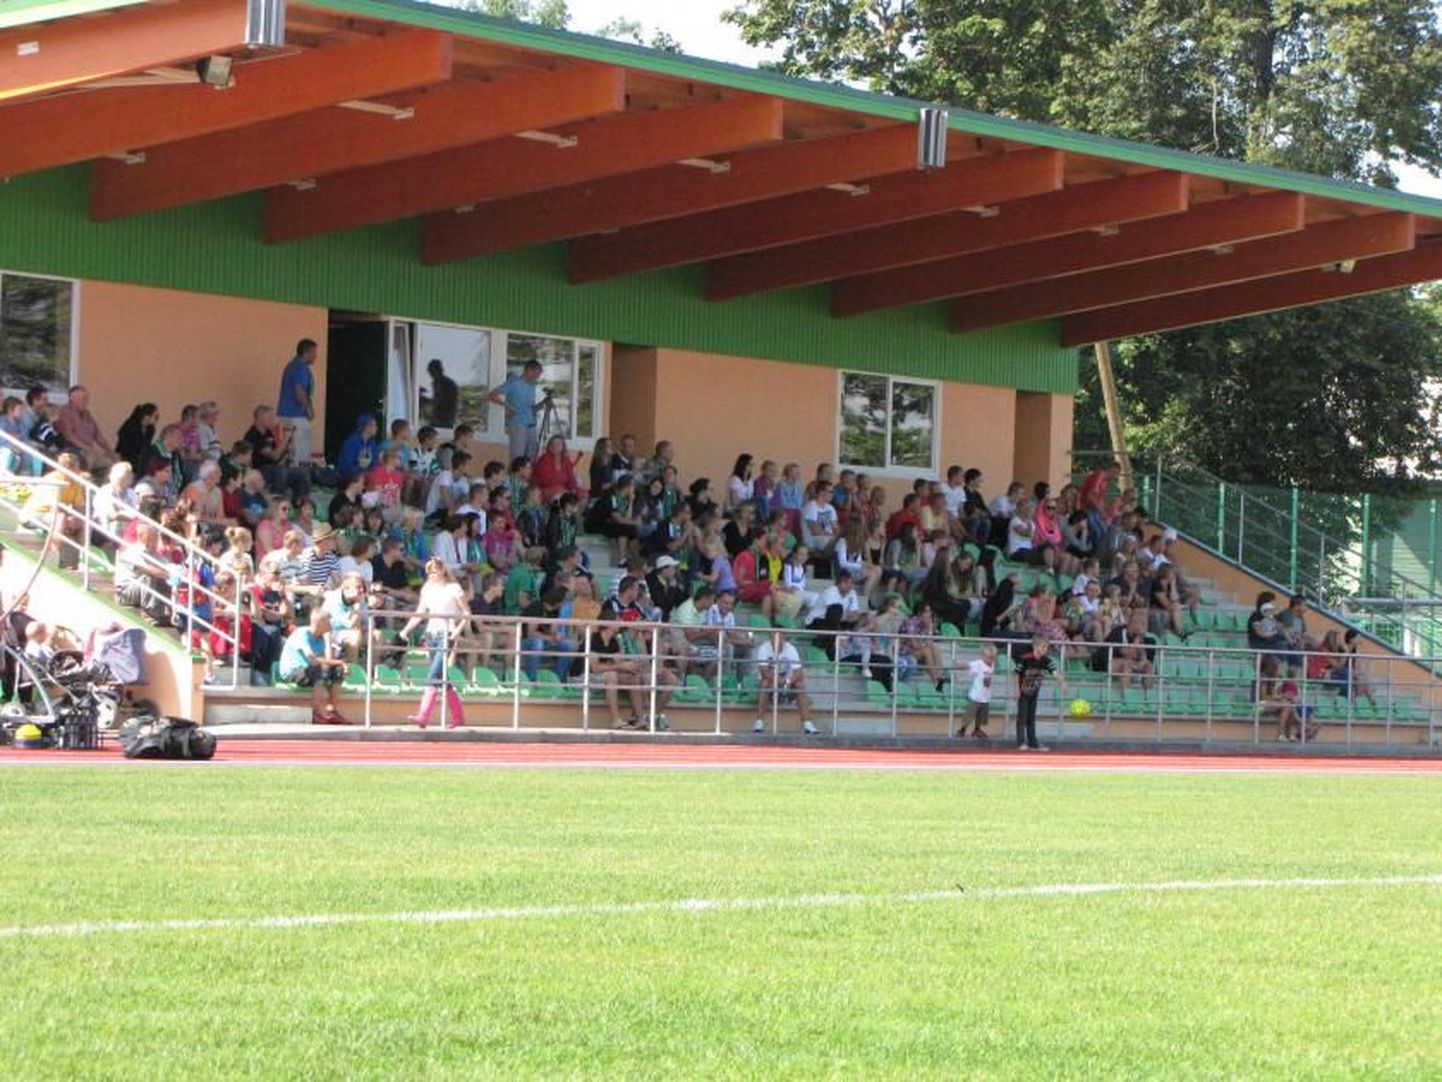 Vändra Vapruse mängud meelitasid mullu valminud uuele staadionile palju kaasaelajaid.